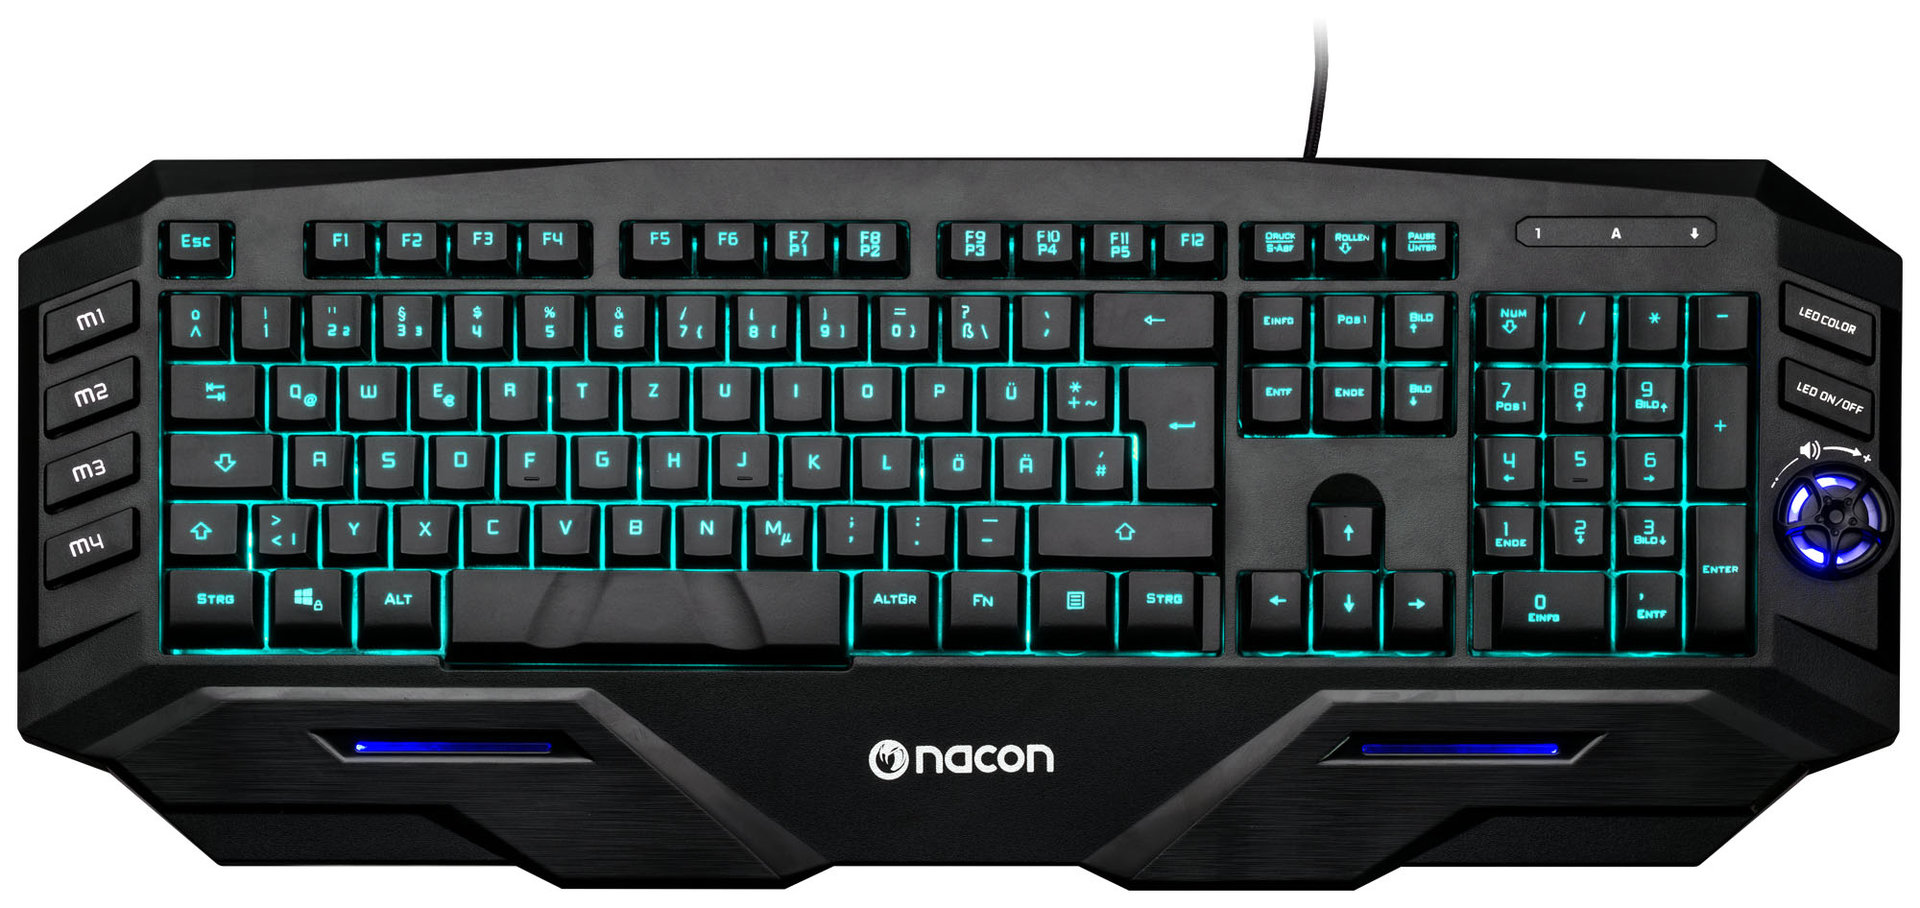 Nacon GK500